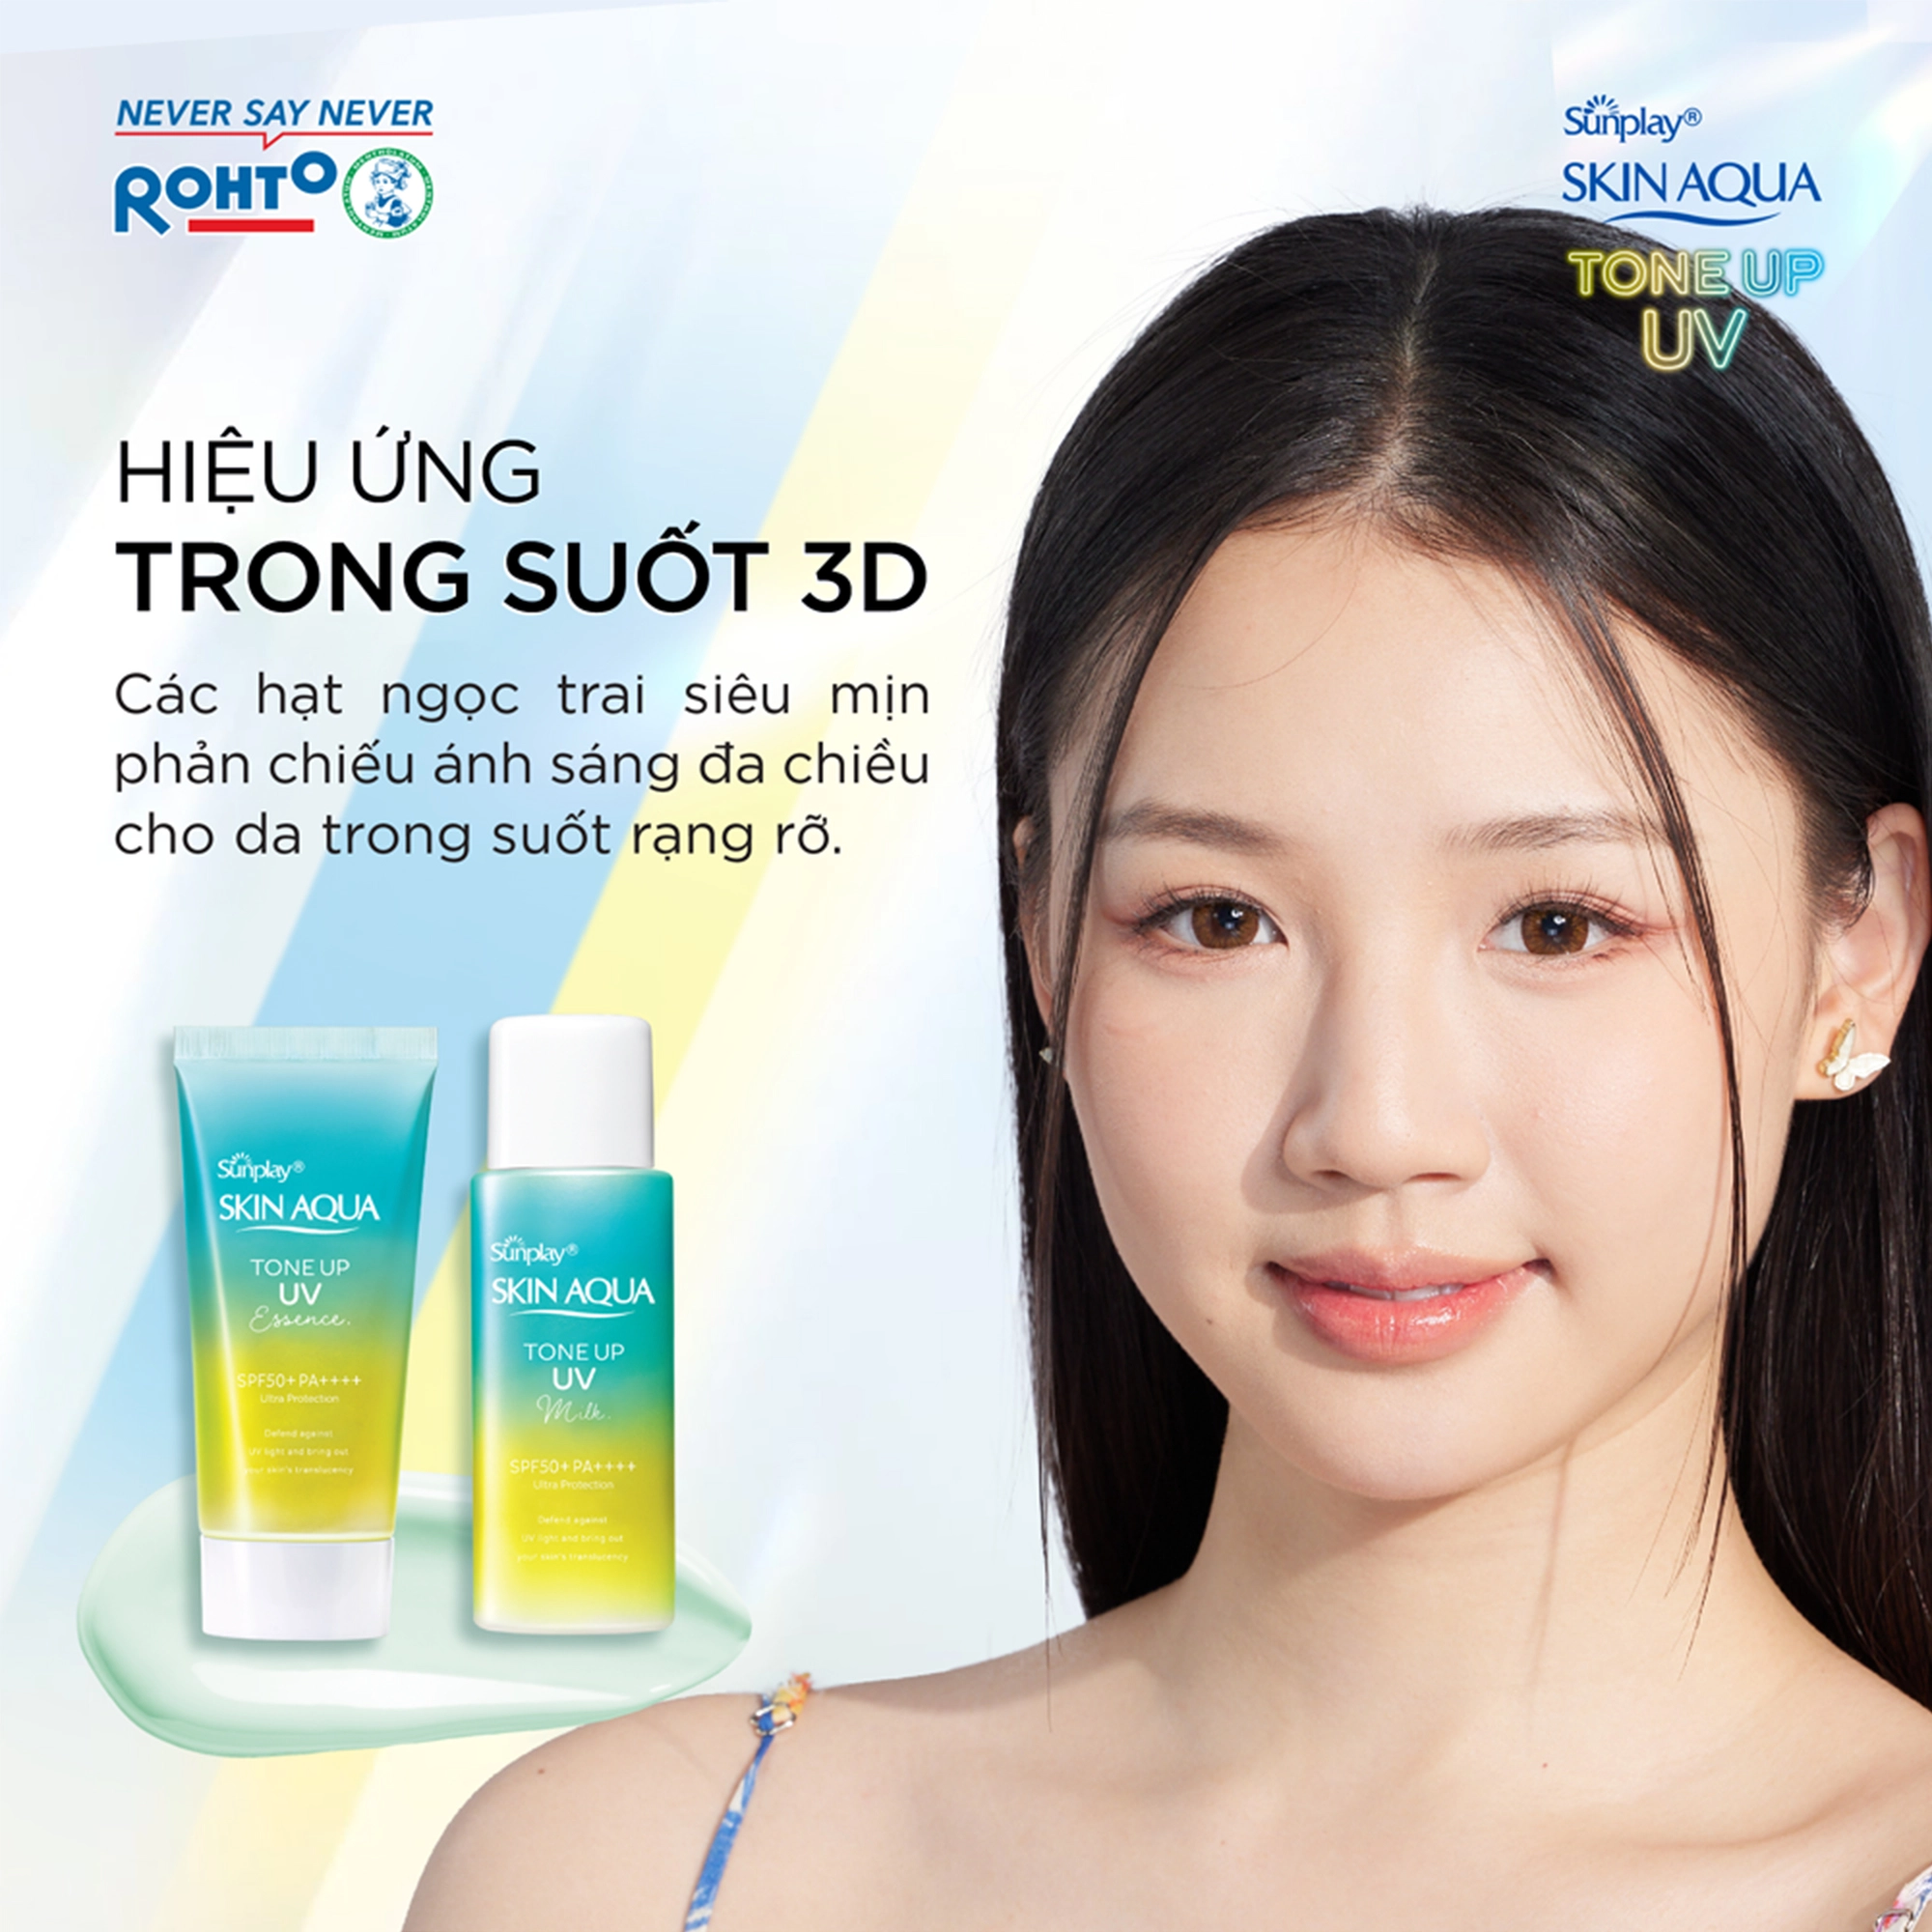 Sữa chống nắng nâng tông Sunplay Skin Aqua Tone Up UV Milk Mint Green SPF50+ PA++++ 50g (Dành cho da dầu, da hỗn hợp)